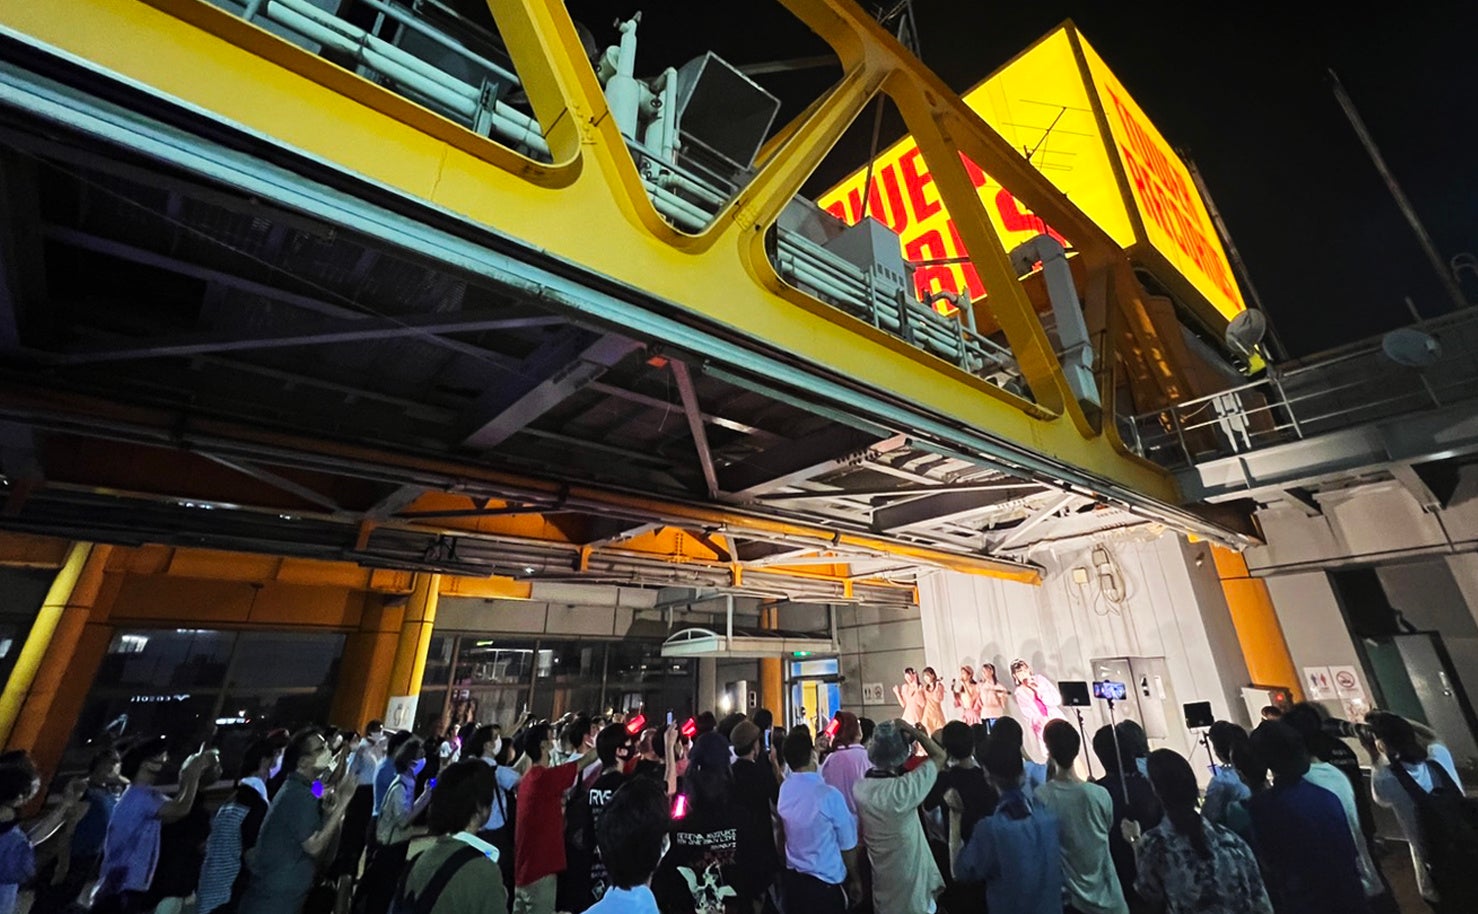 ヘアメイクアーティストYOUCAがおくる新感覚アートイベント「PEEP展」をラフォーレ原宿にて初開催